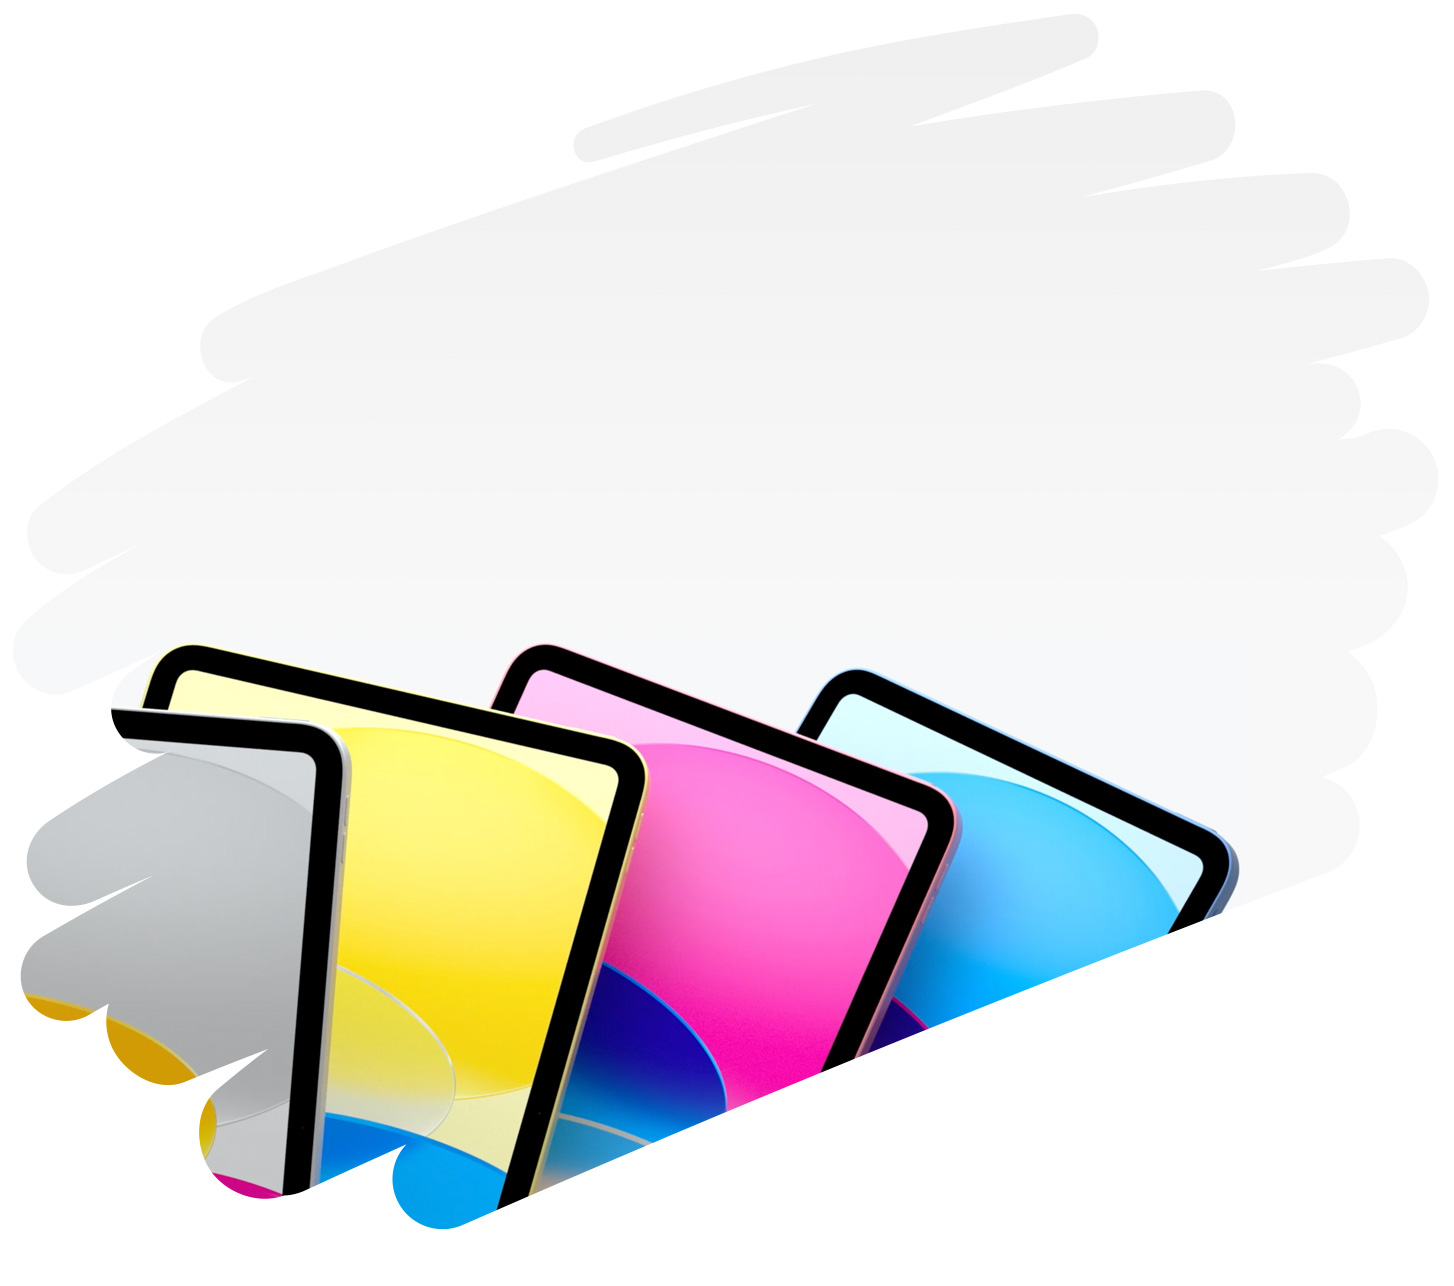 页面上涂抹着粗大的笔画线条，以此为背景呈现各款颜色的 iPad。